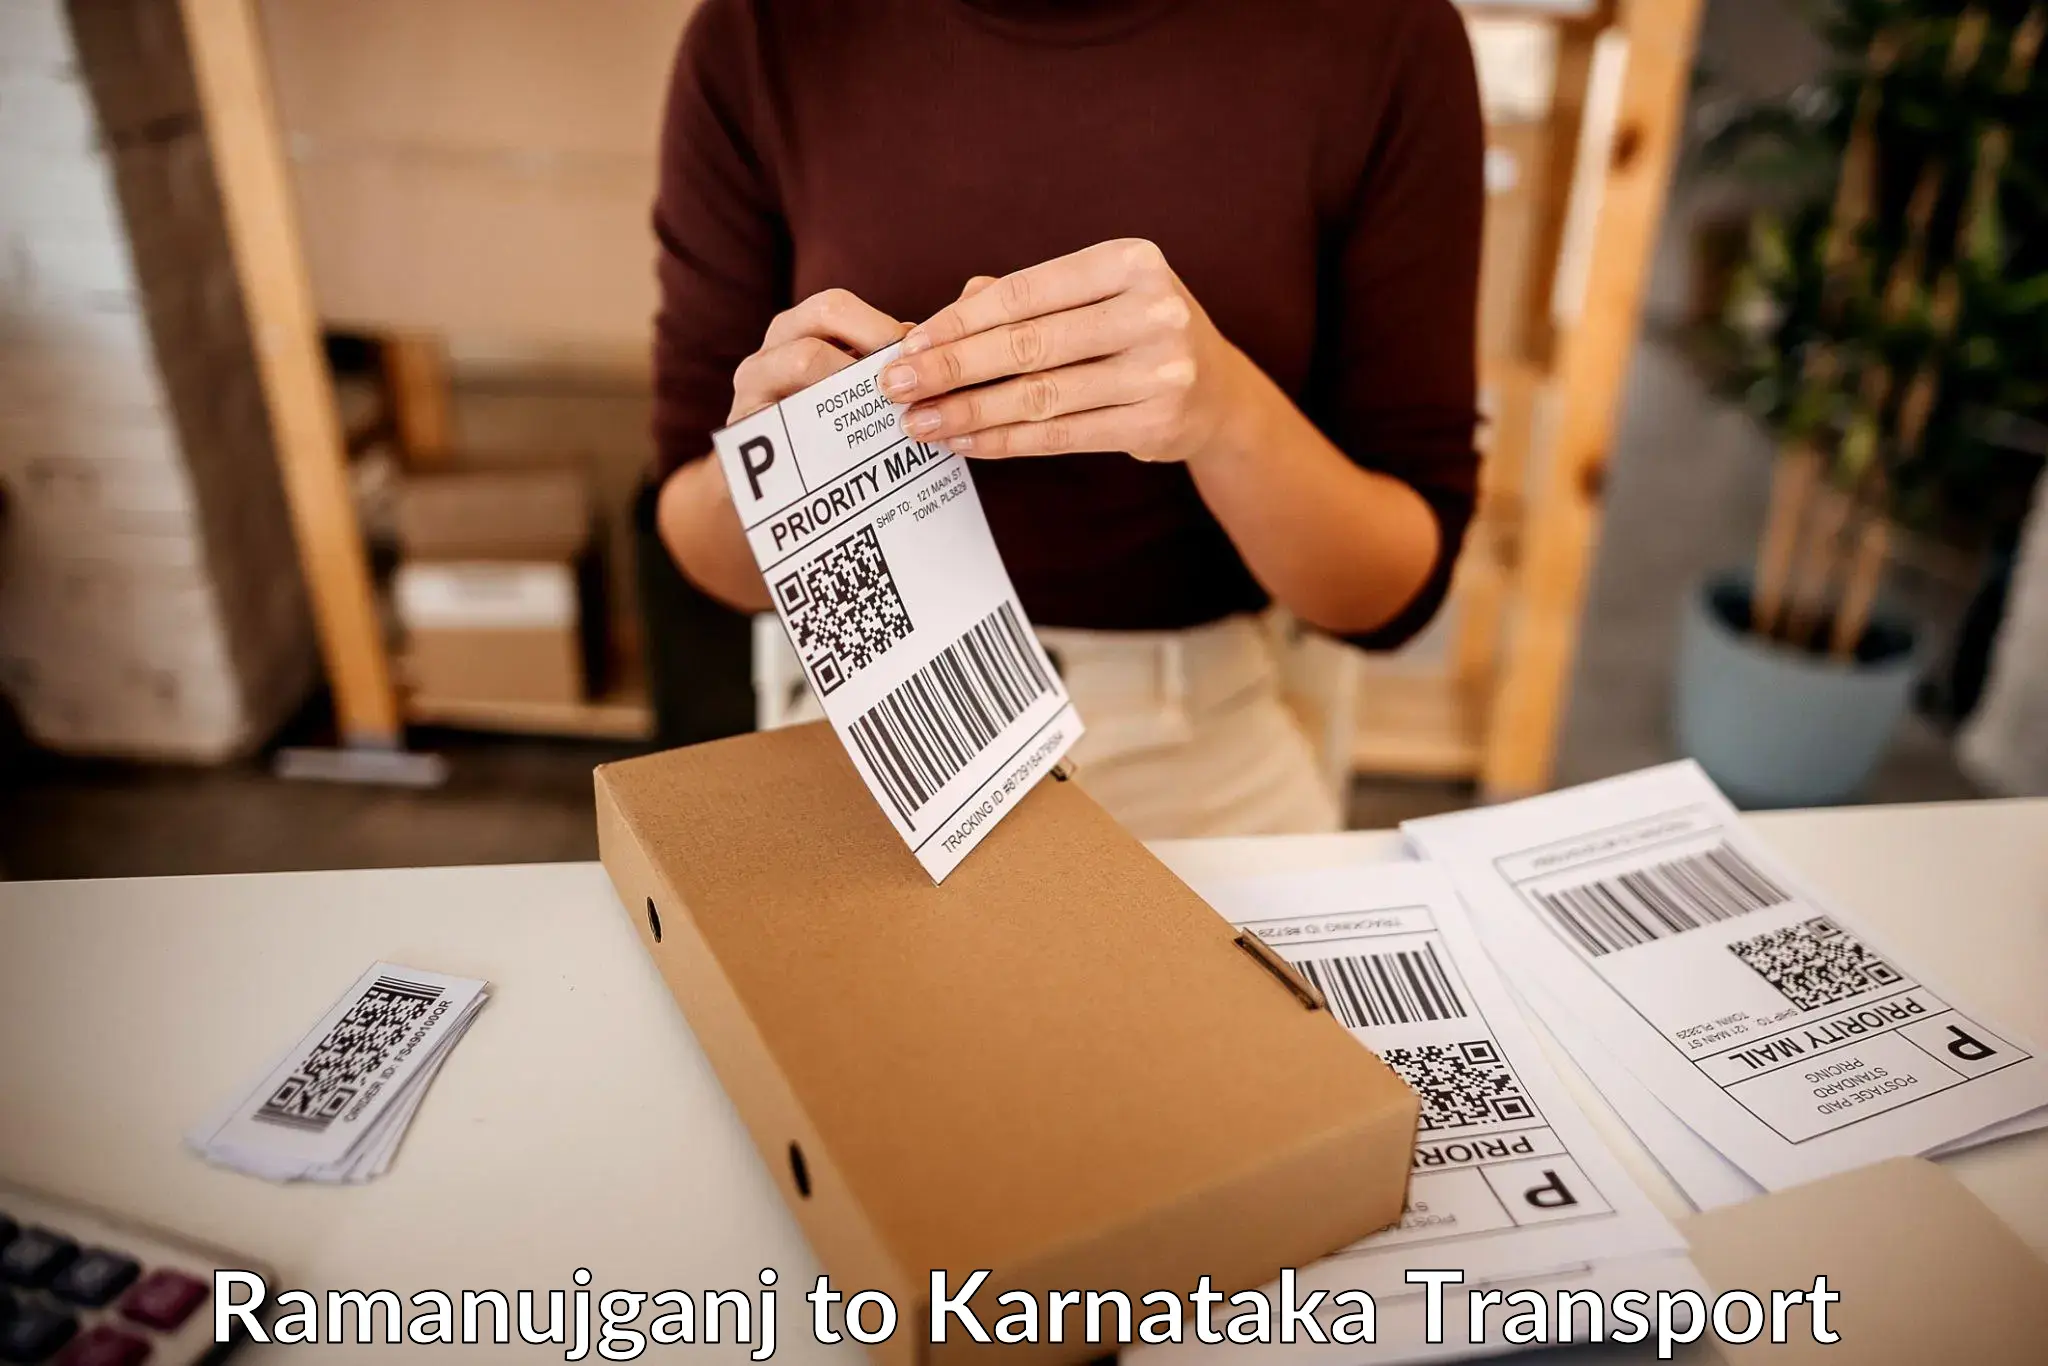 Interstate transport services Ramanujganj to Karnataka